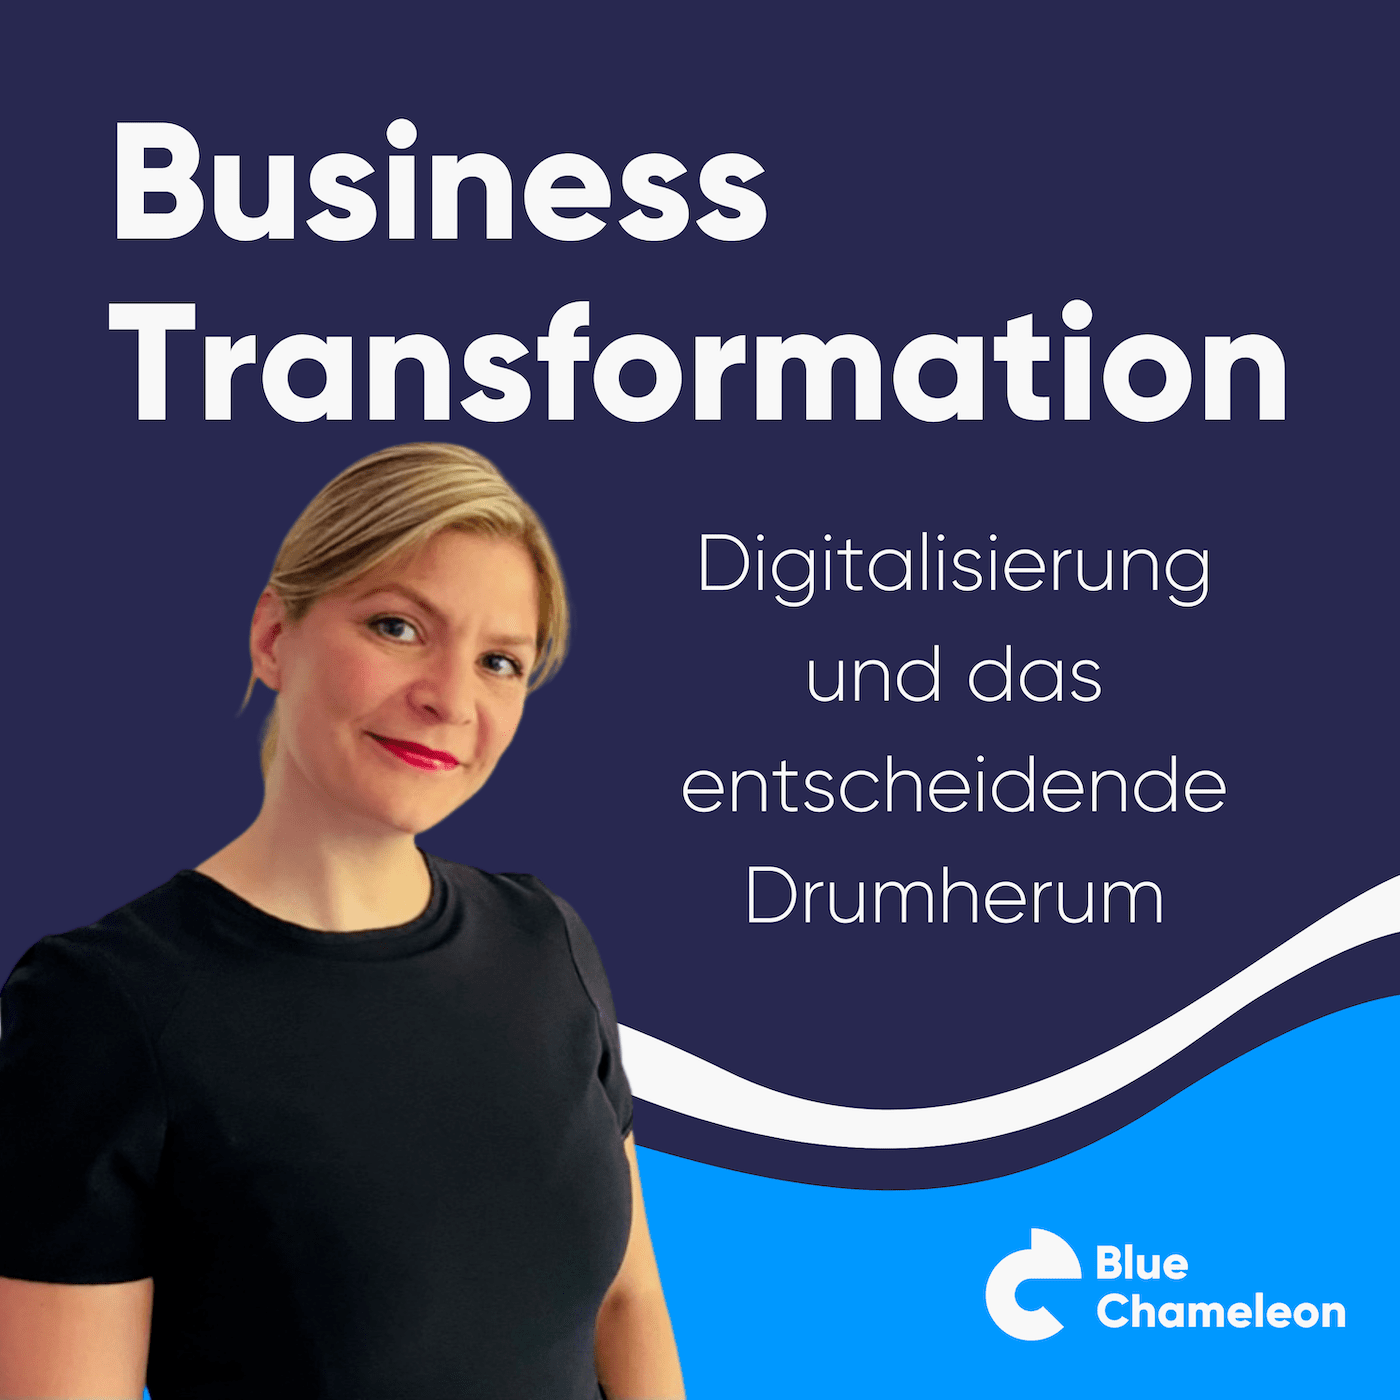 Business Transformation | Digitalisierung und das entscheidende Drumherum